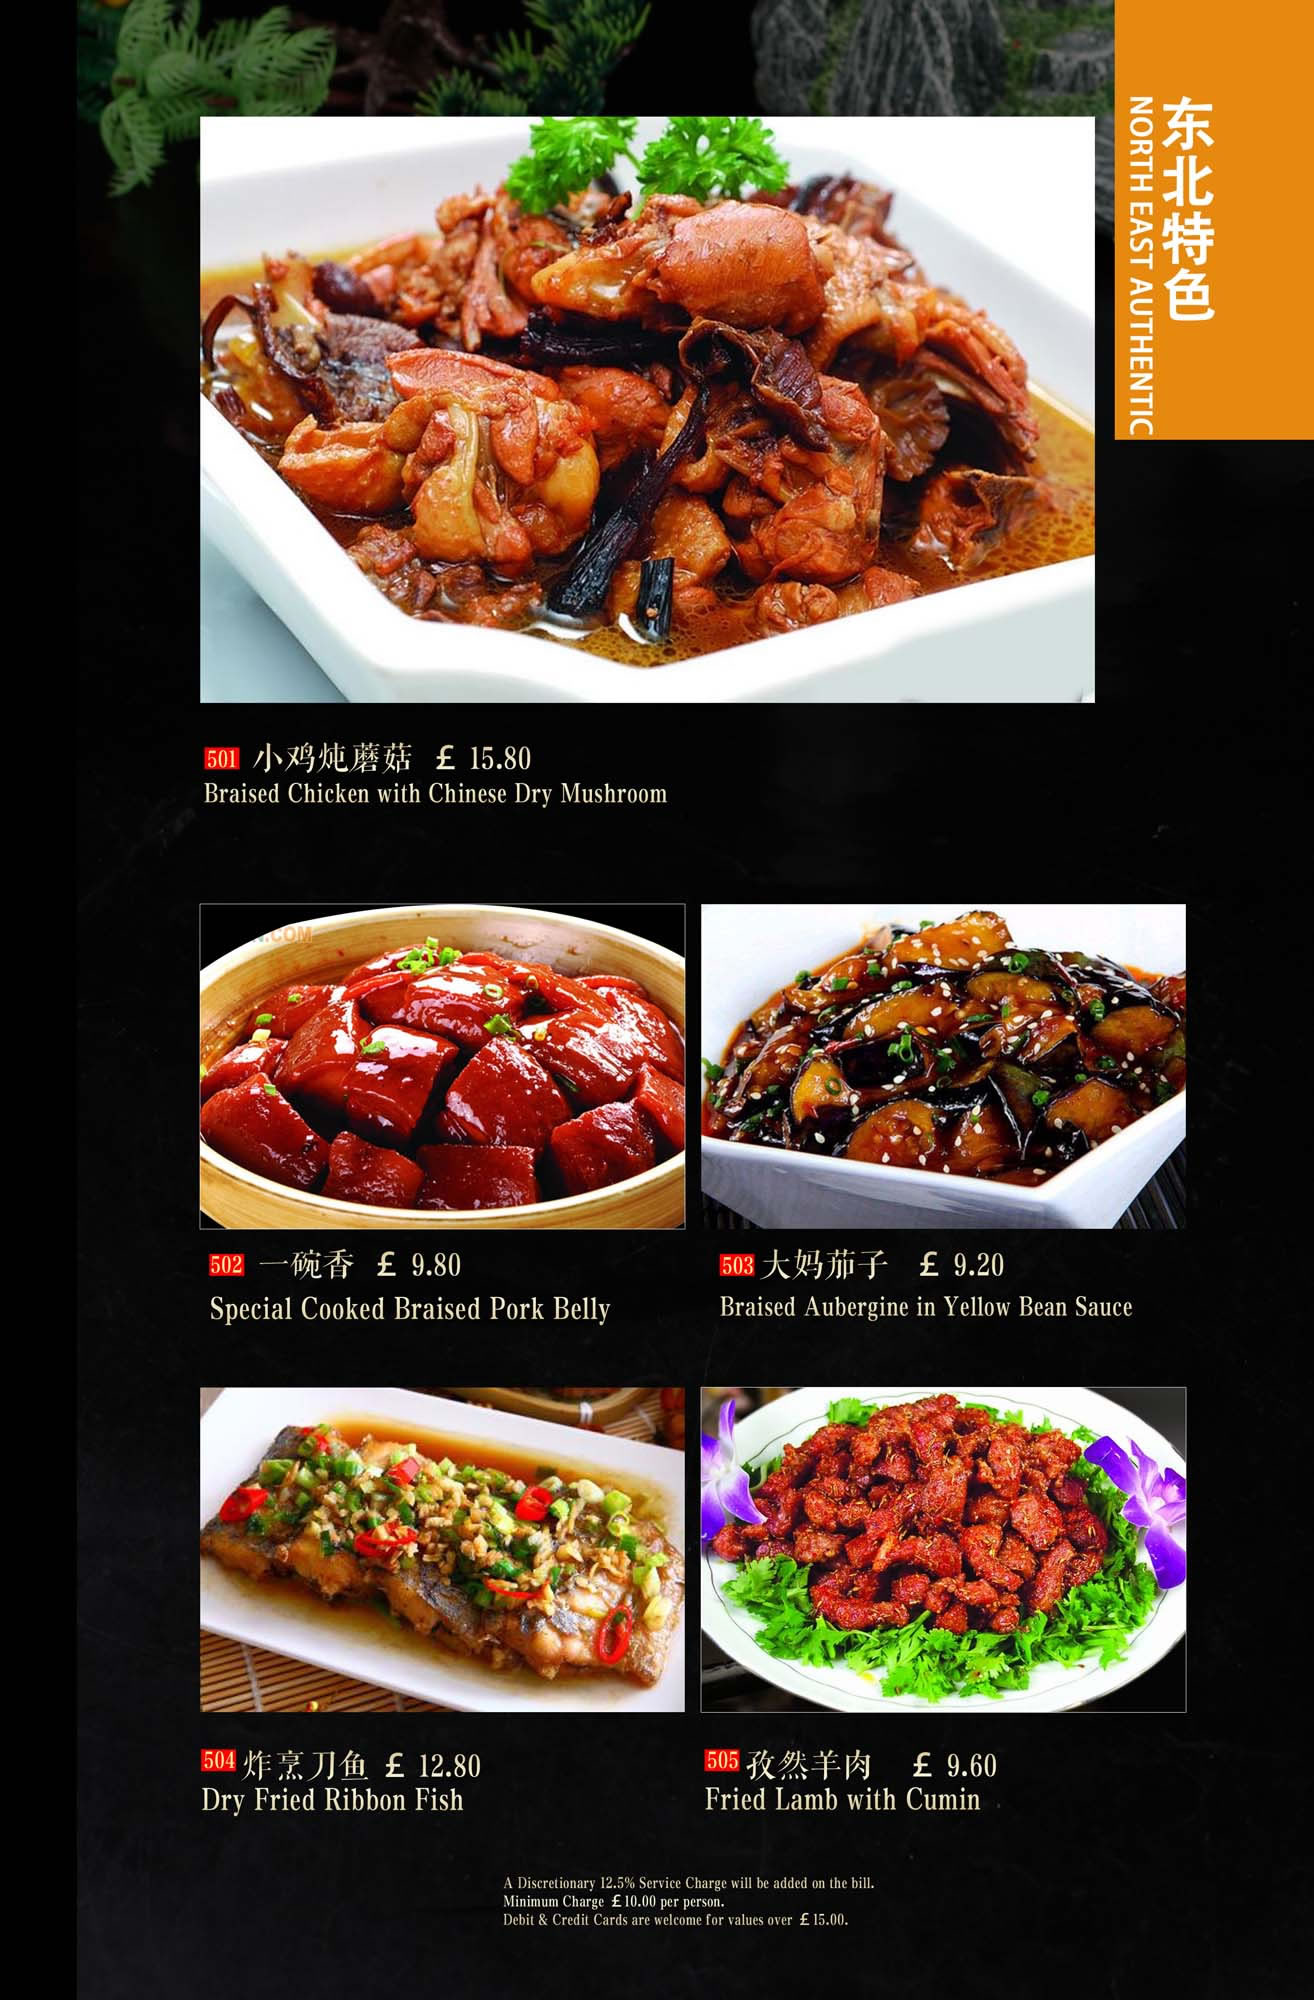 Menu | 菜单 – Crystal China Restaurant